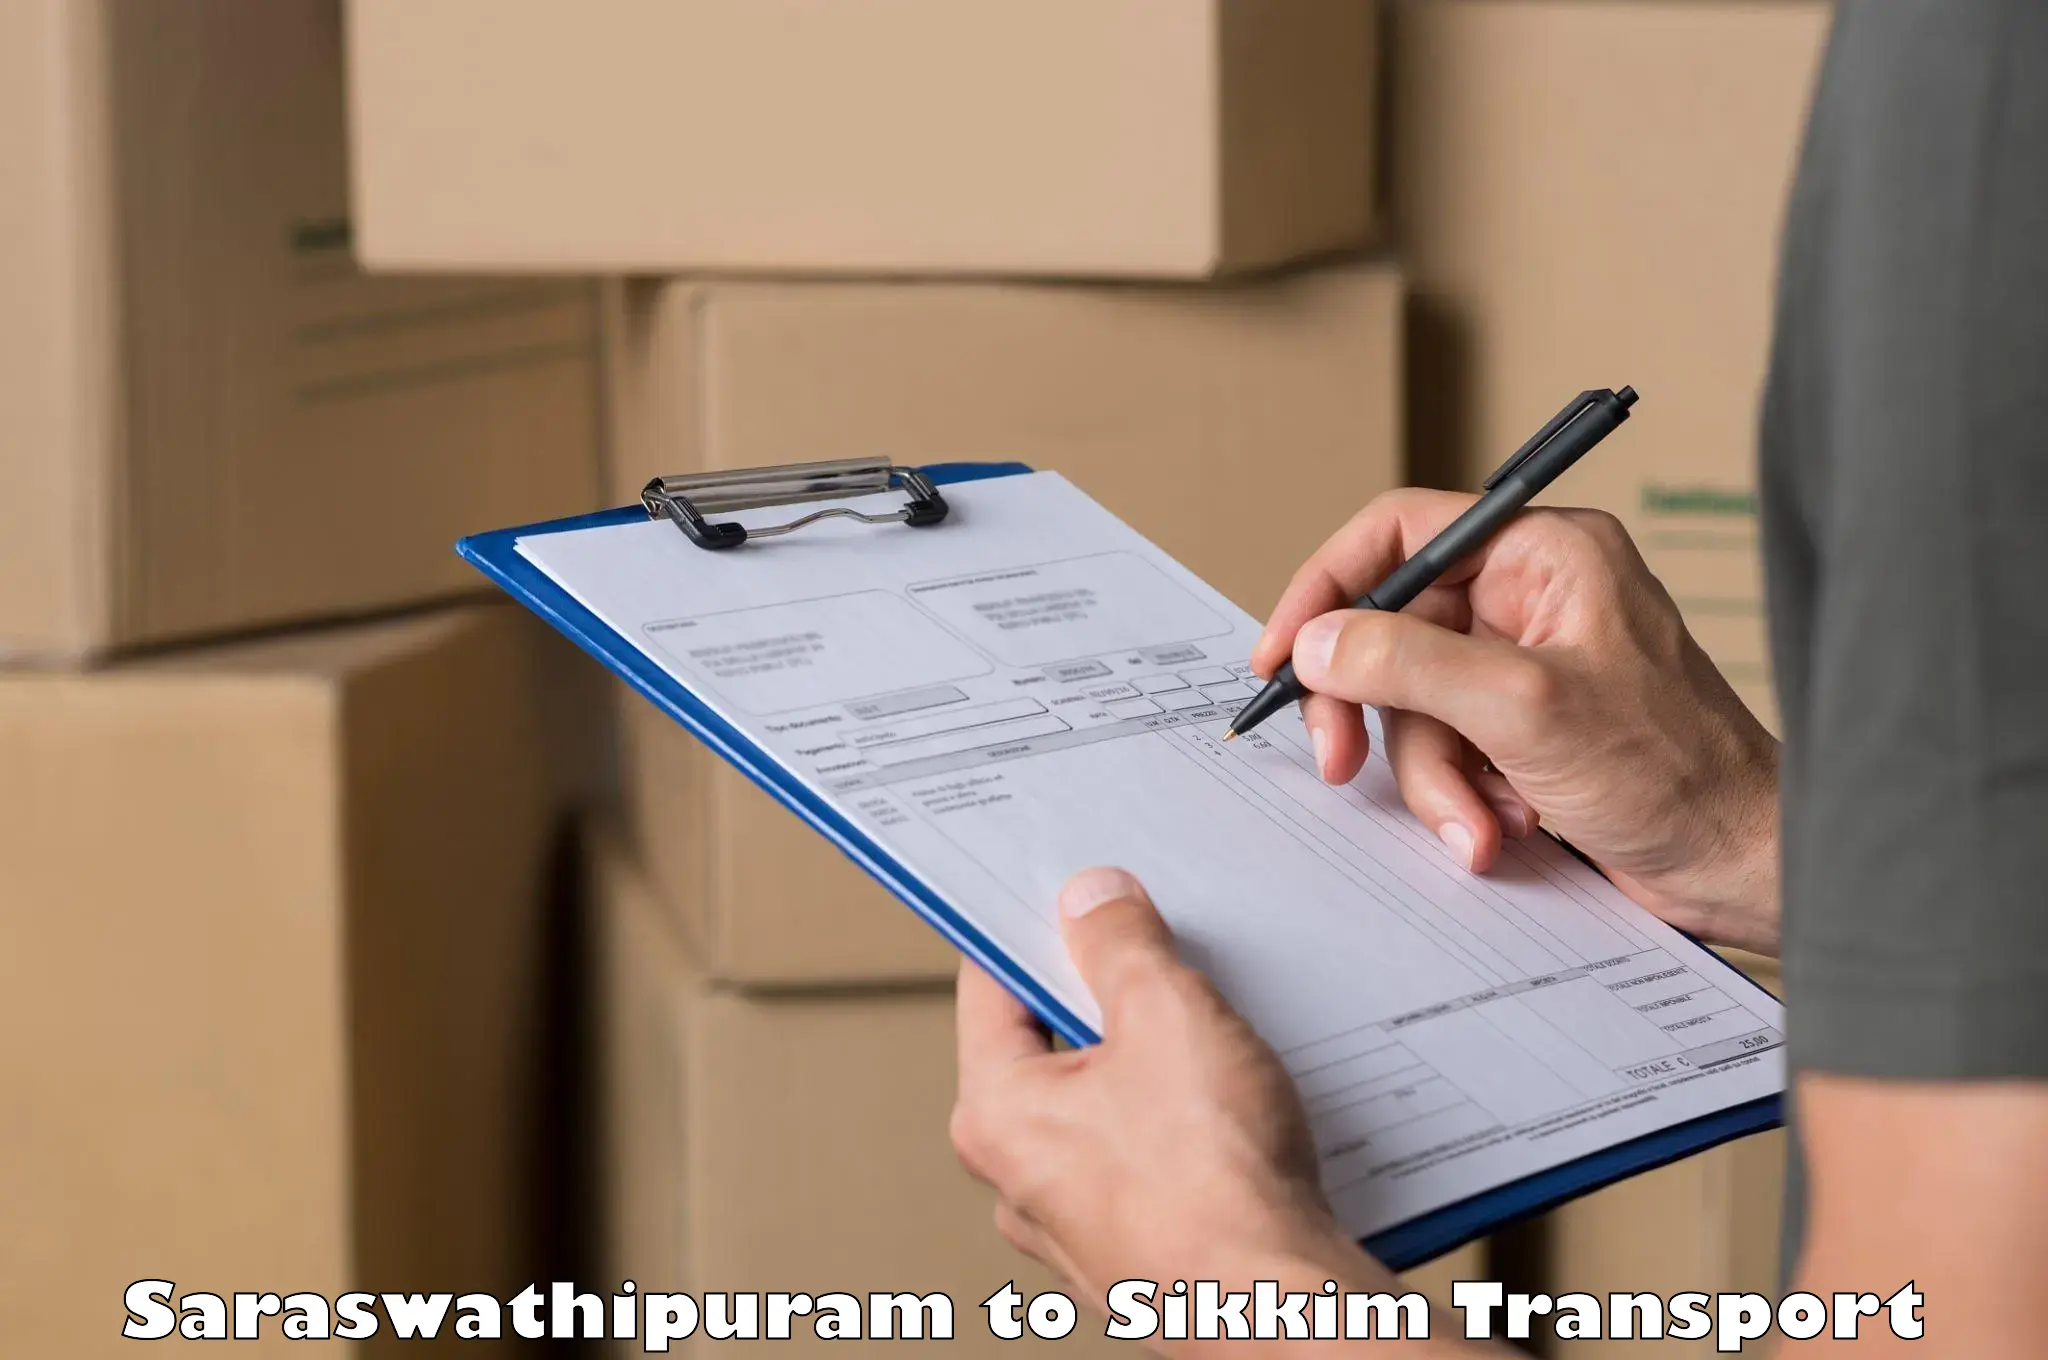 Transport in sharing Saraswathipuram to Geyzing